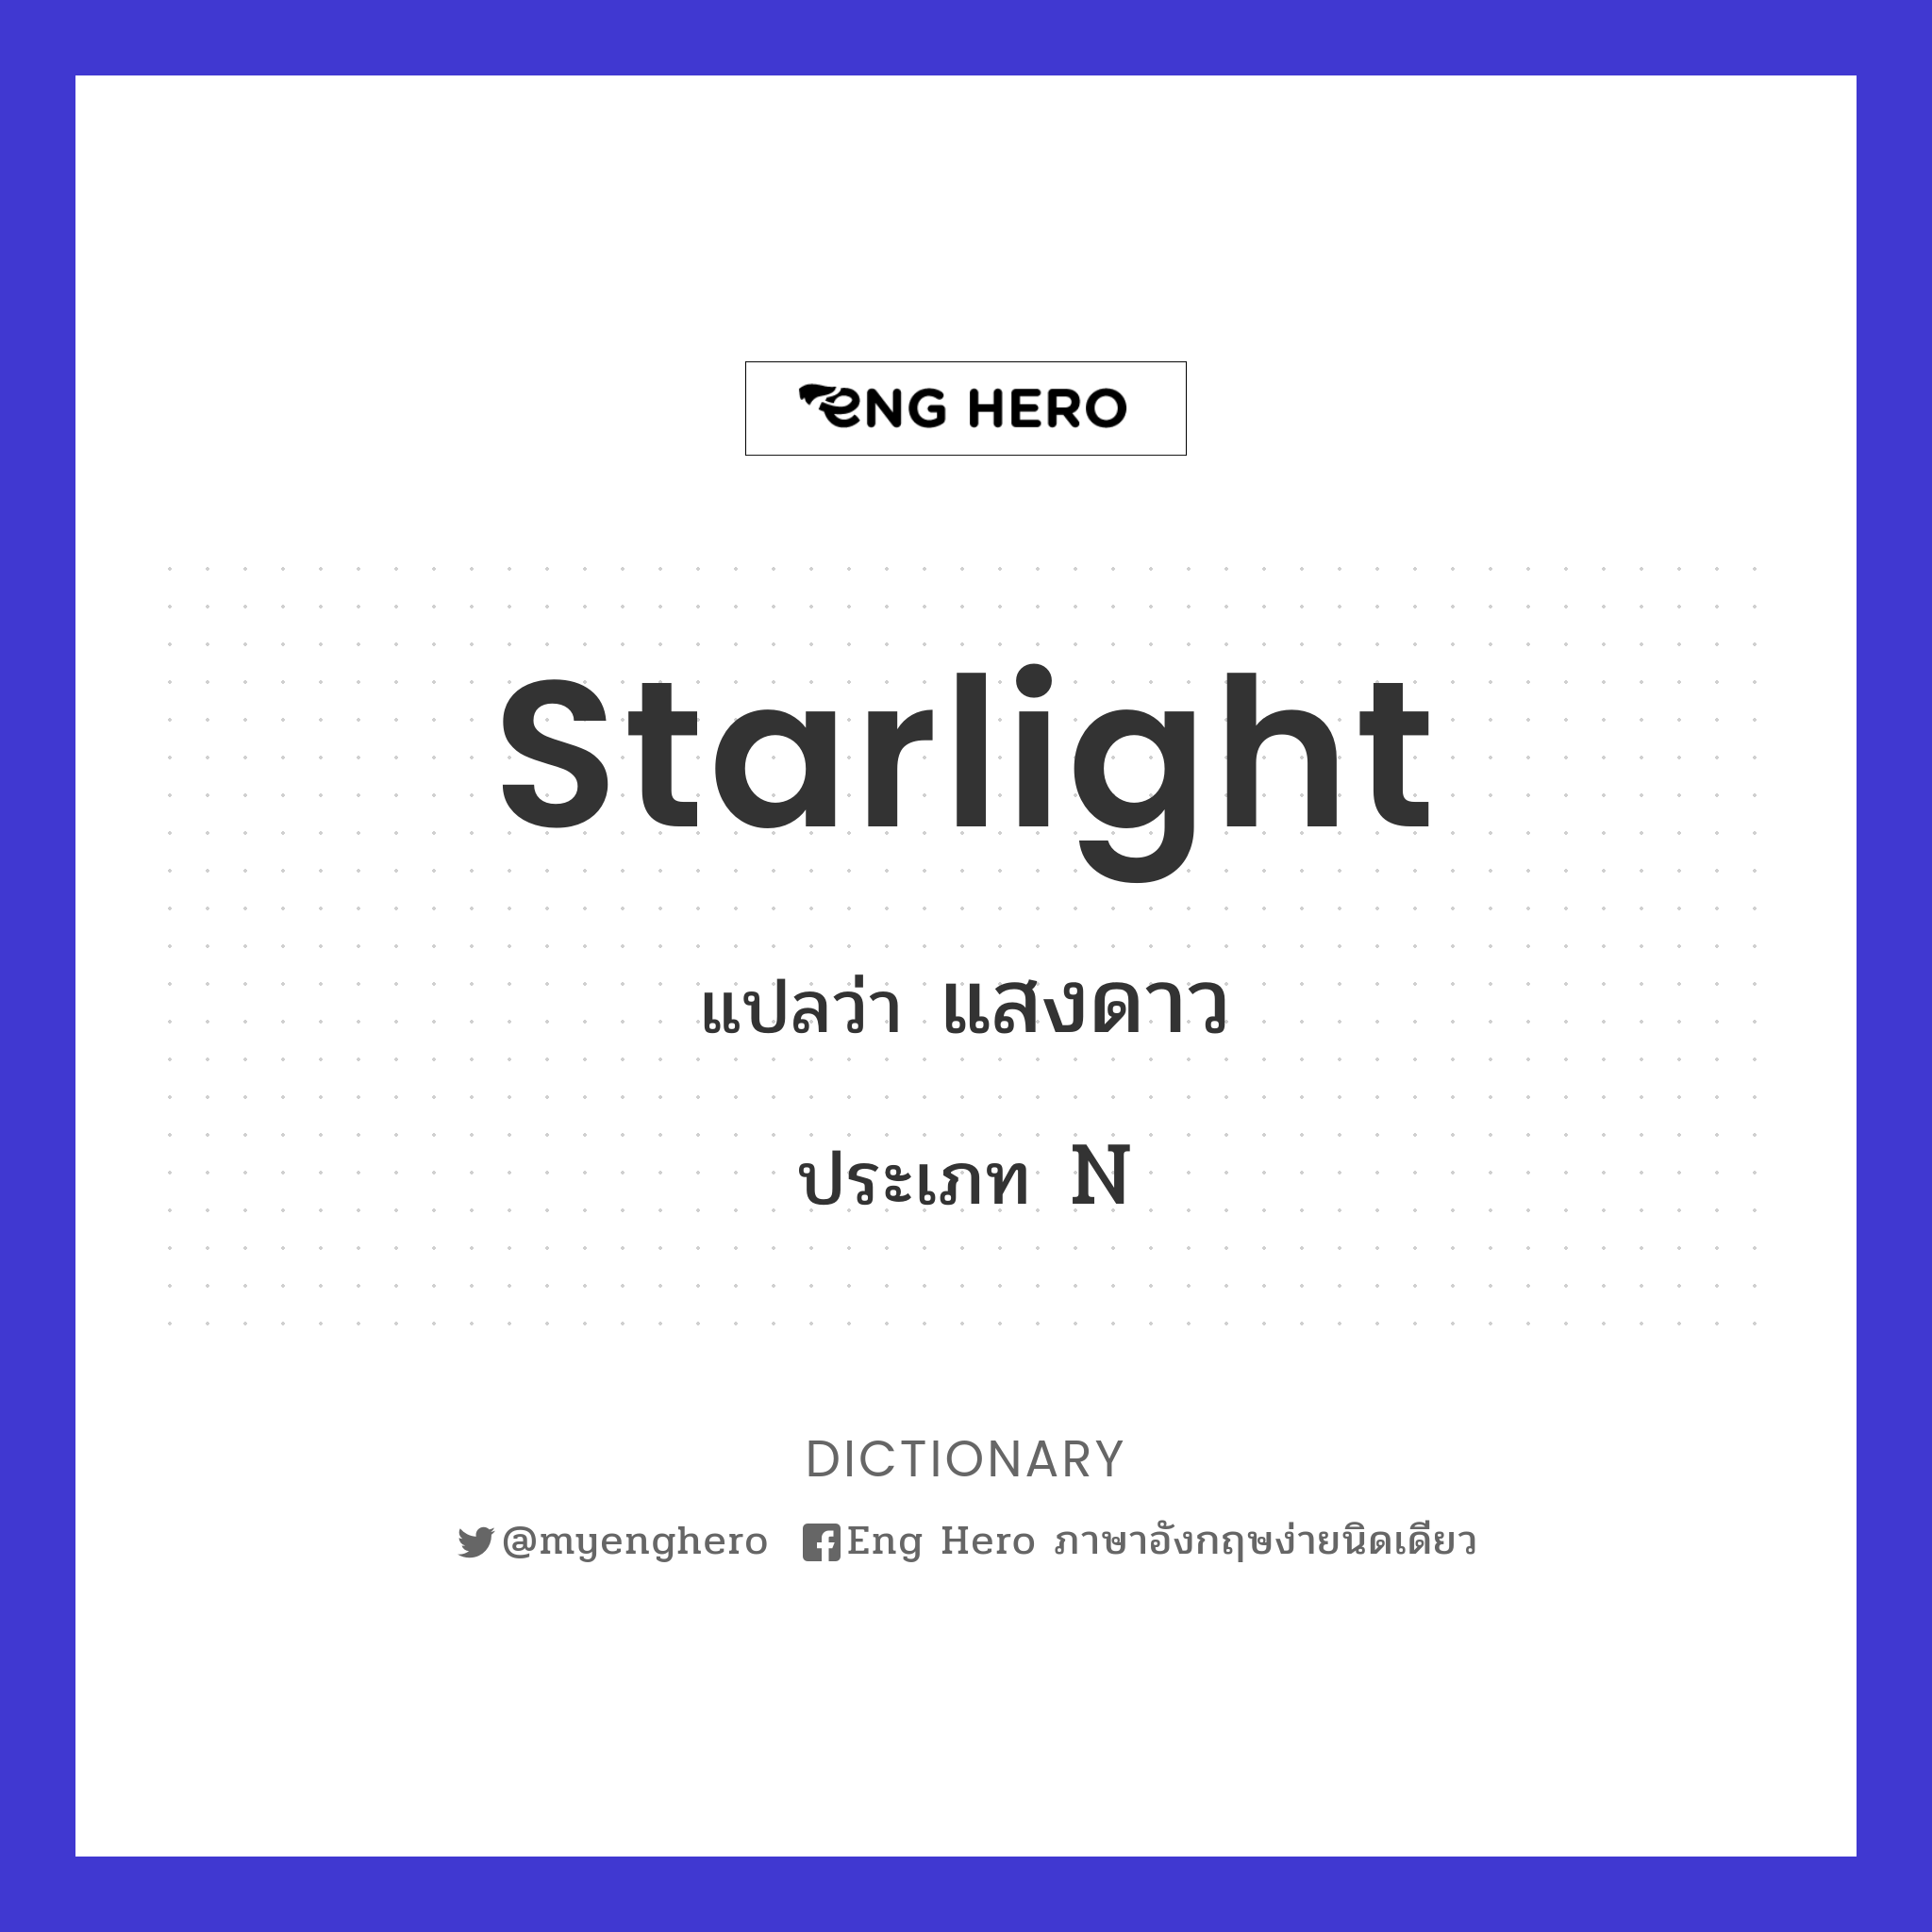 starlight